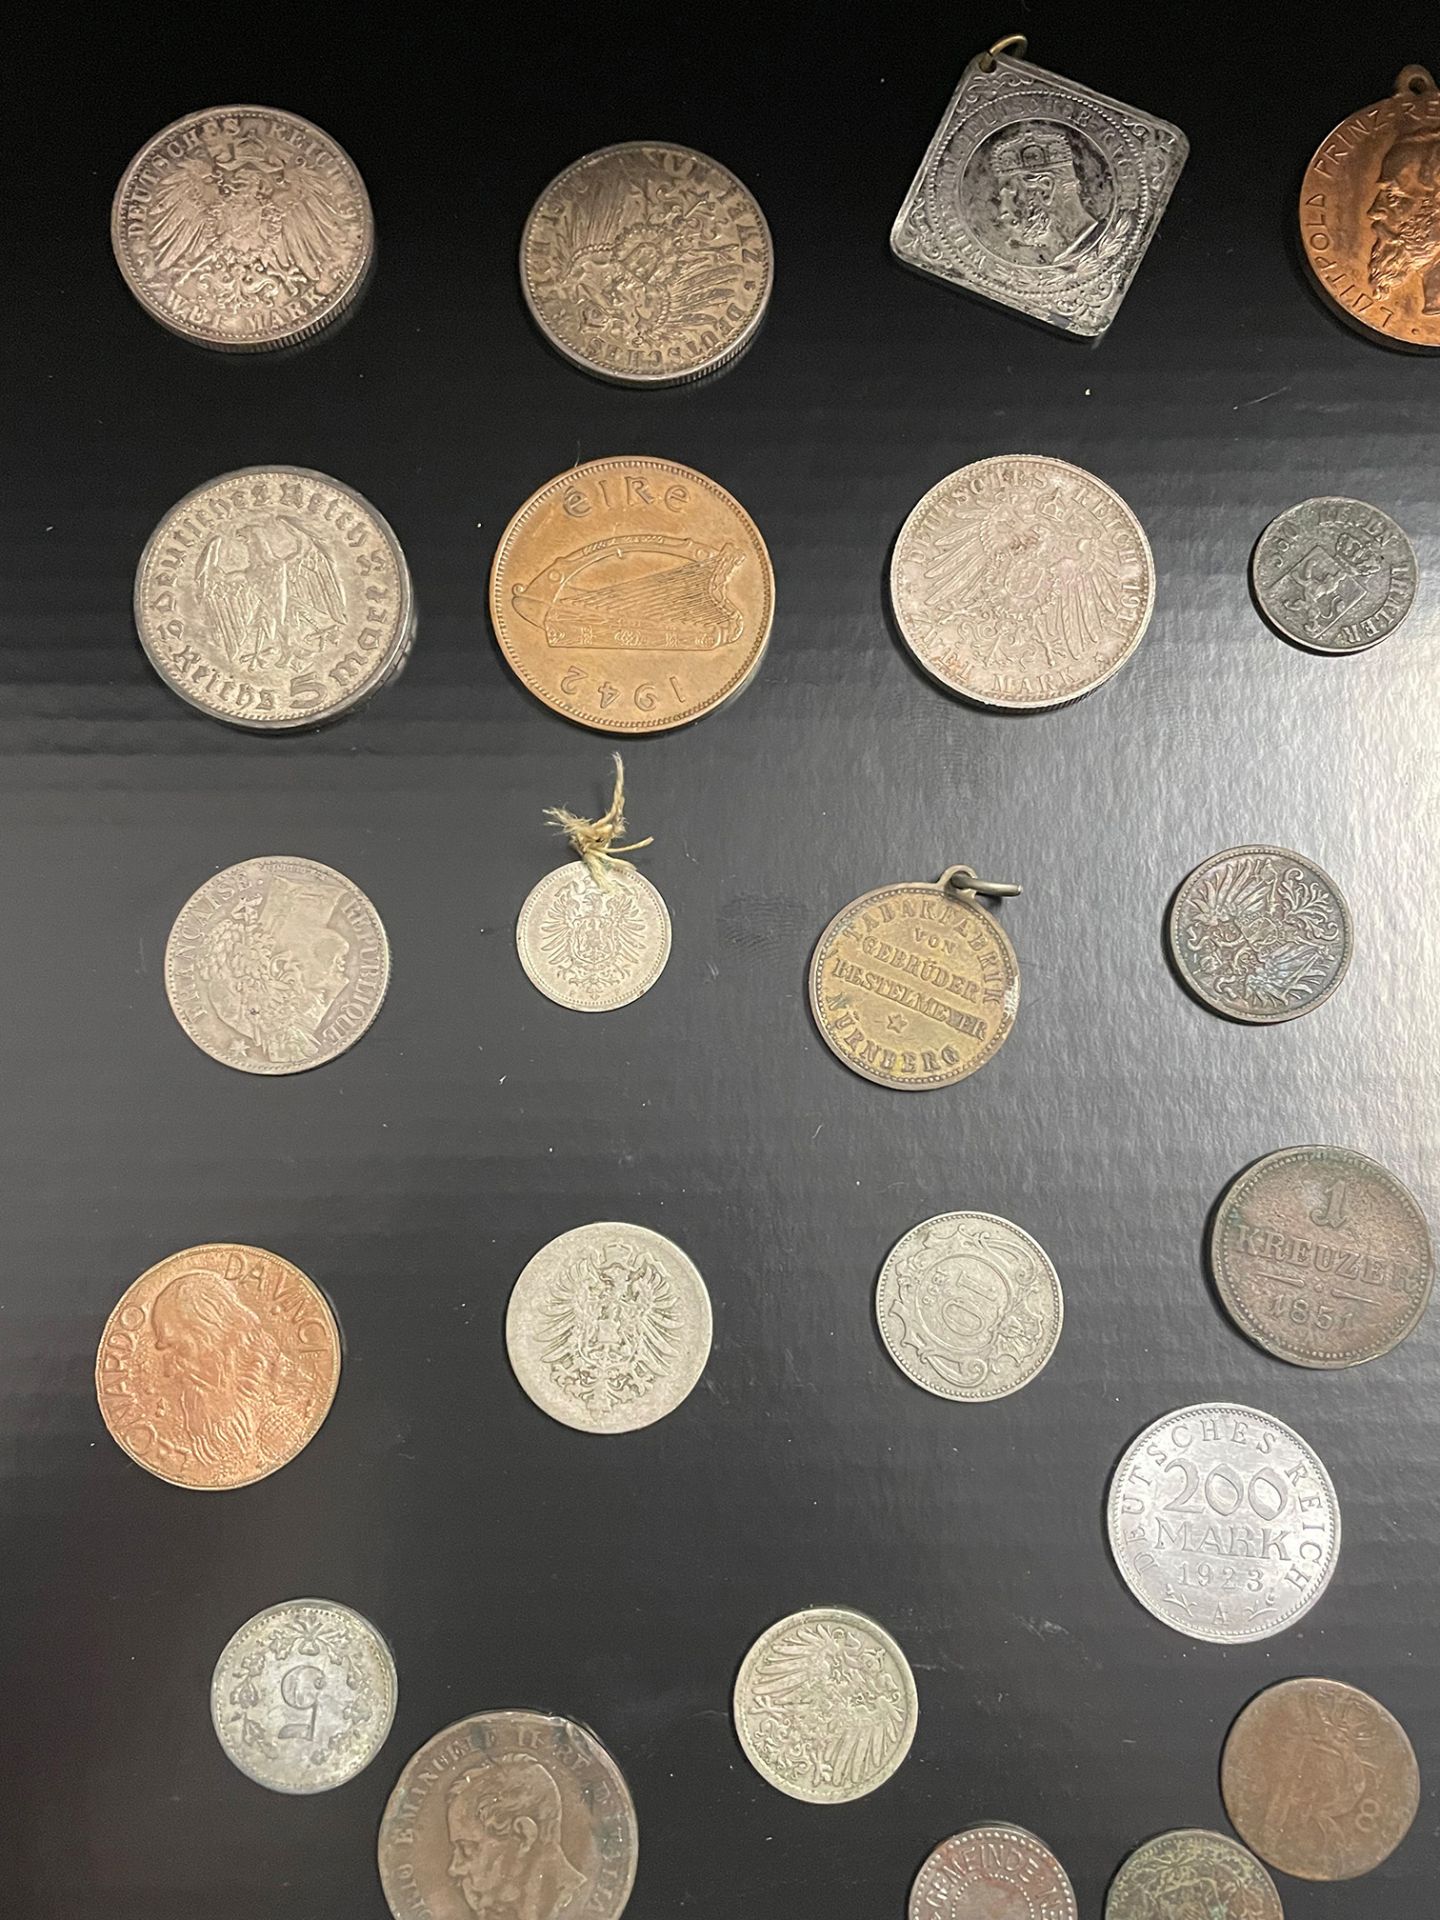 Konvolut Münzen, Medaillen, Münzanhänger, Sammlungsauflösung, darunter: 1 x 5 Dollar 1988, Canada, - Bild 2 aus 26